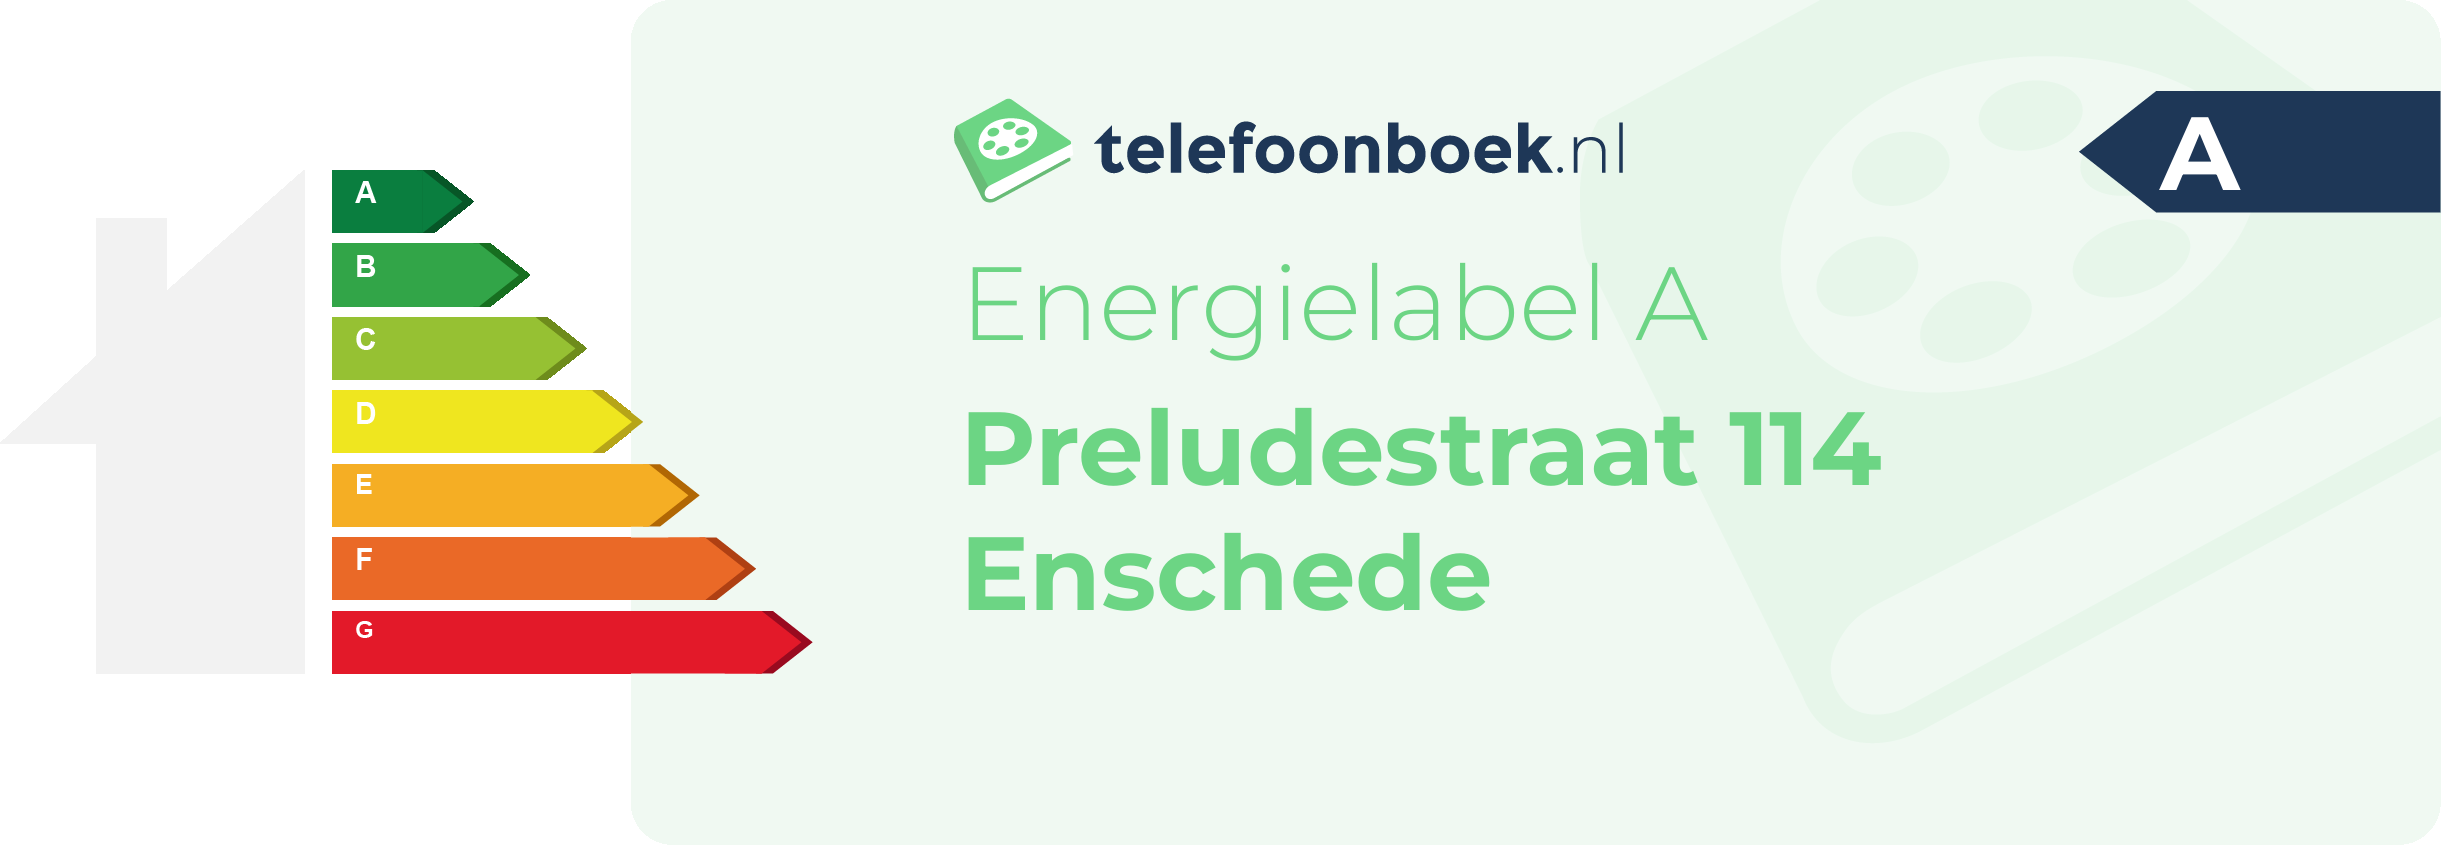 Energielabel Preludestraat 114 Enschede